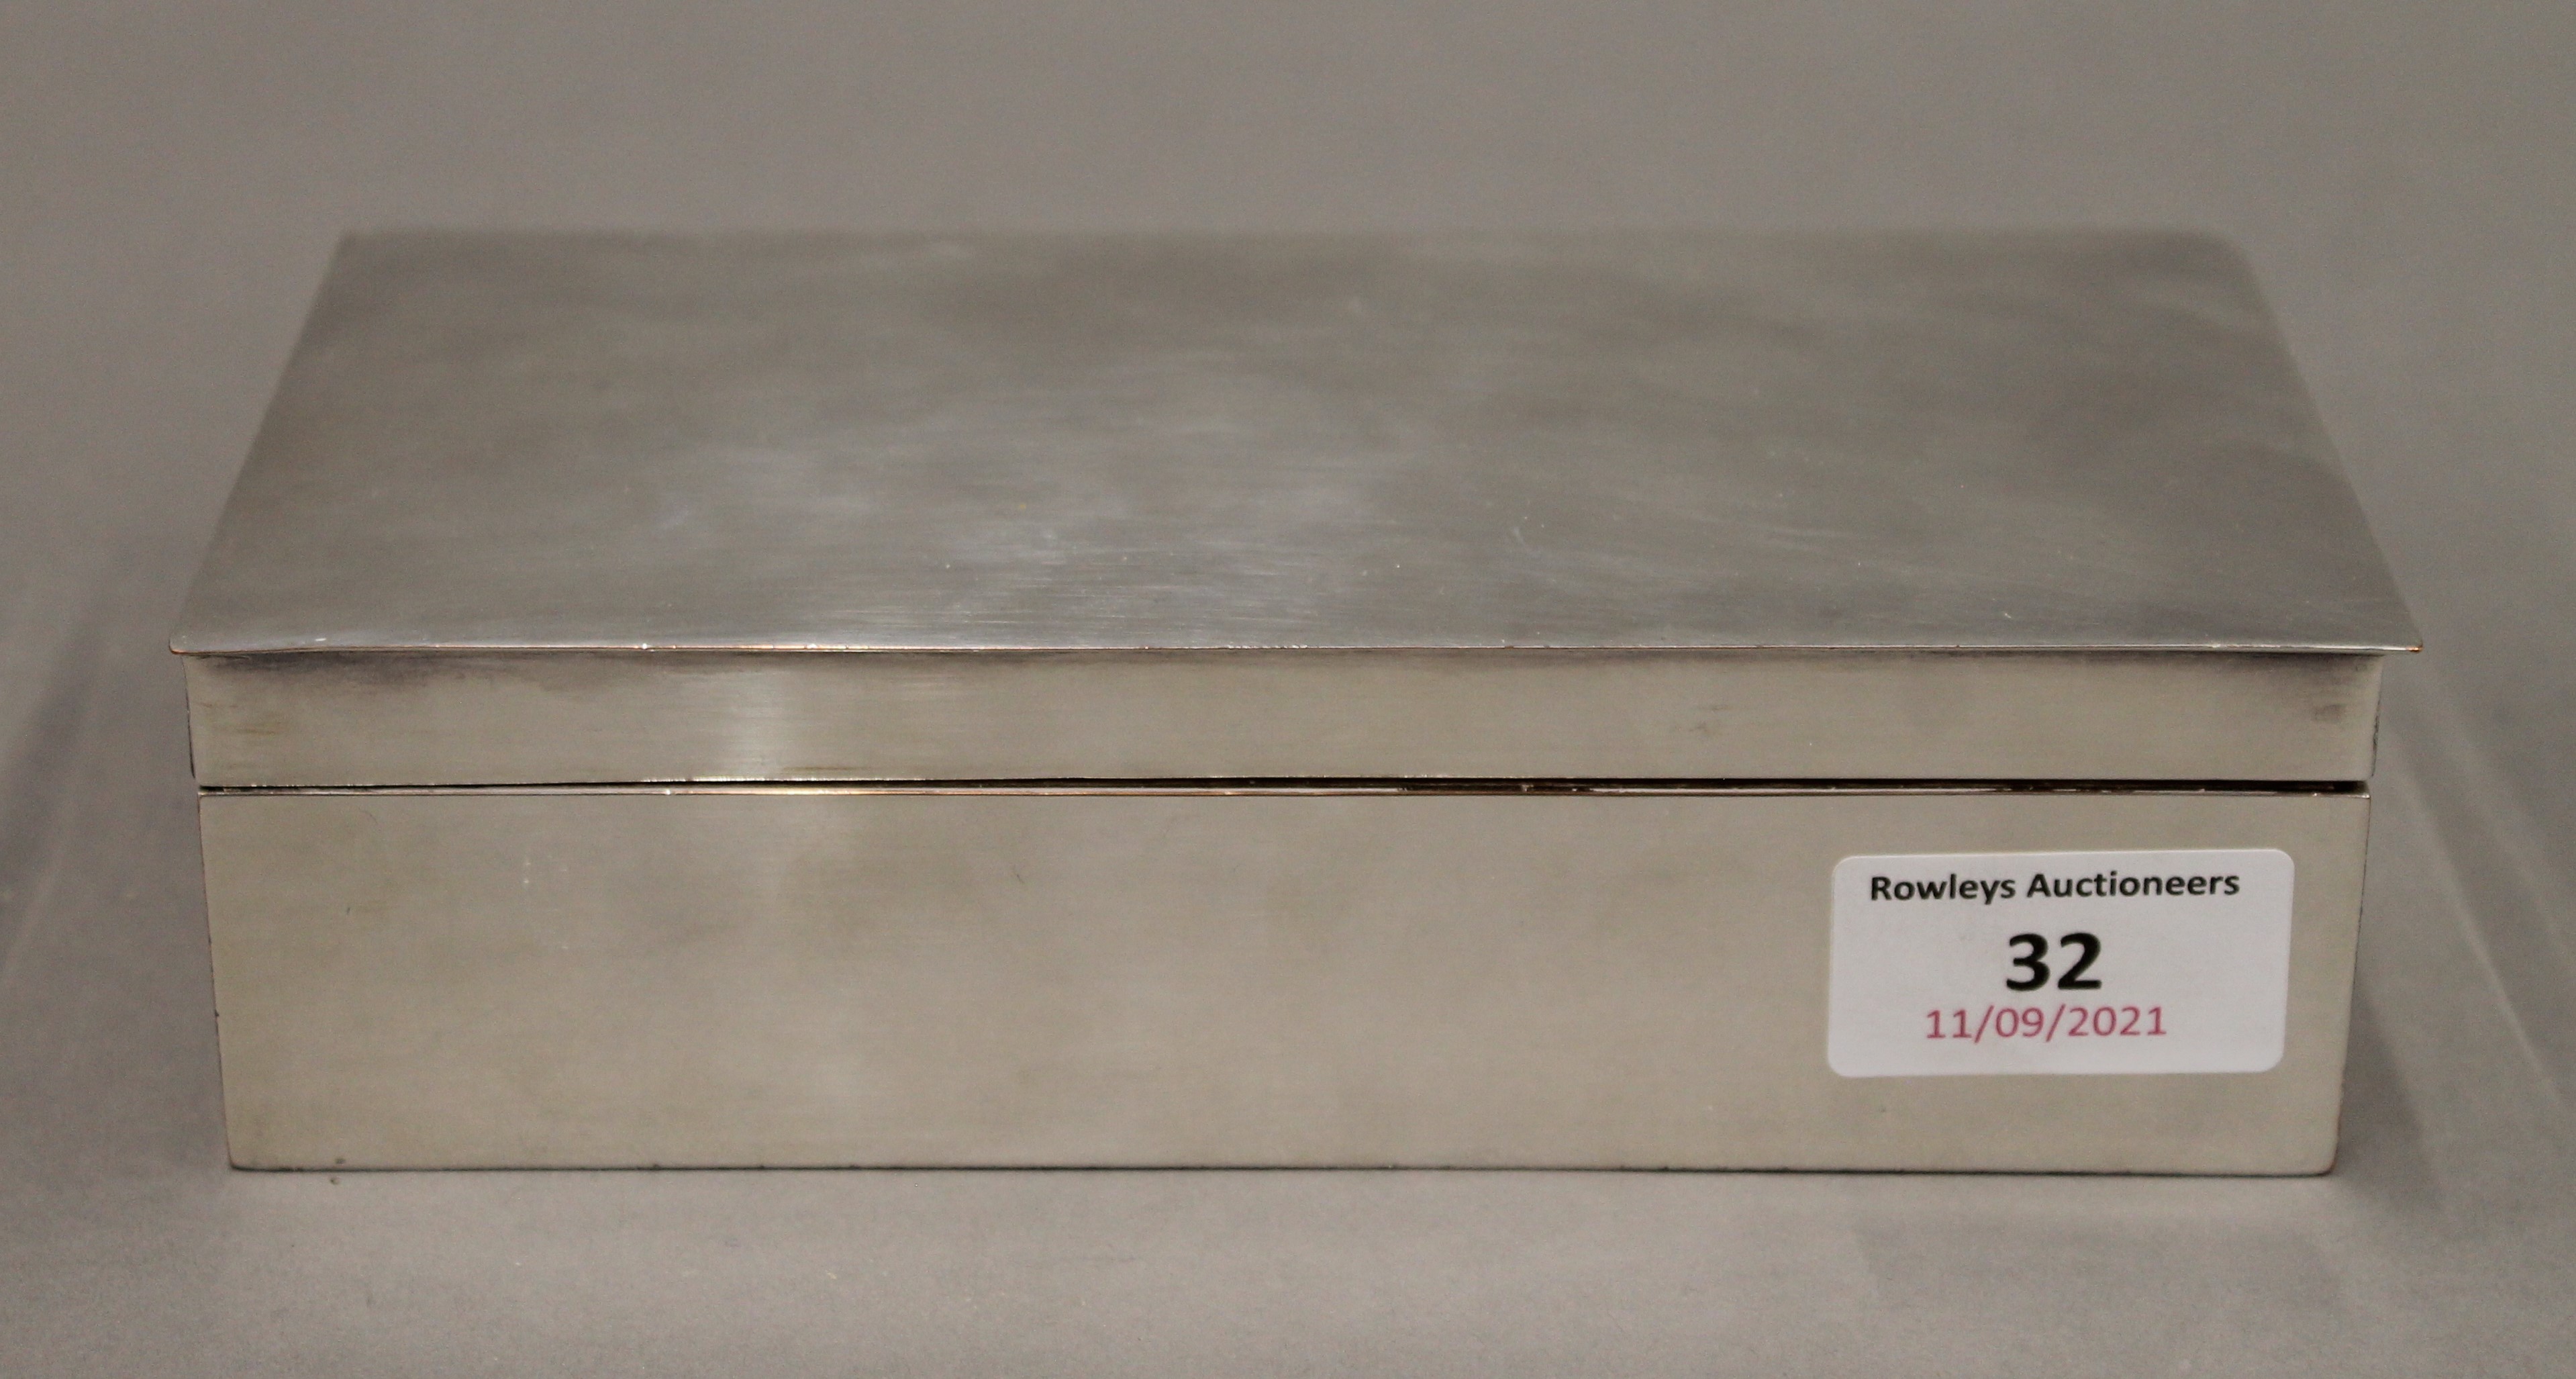 A silver plated cigarette box. 18 cm wide.